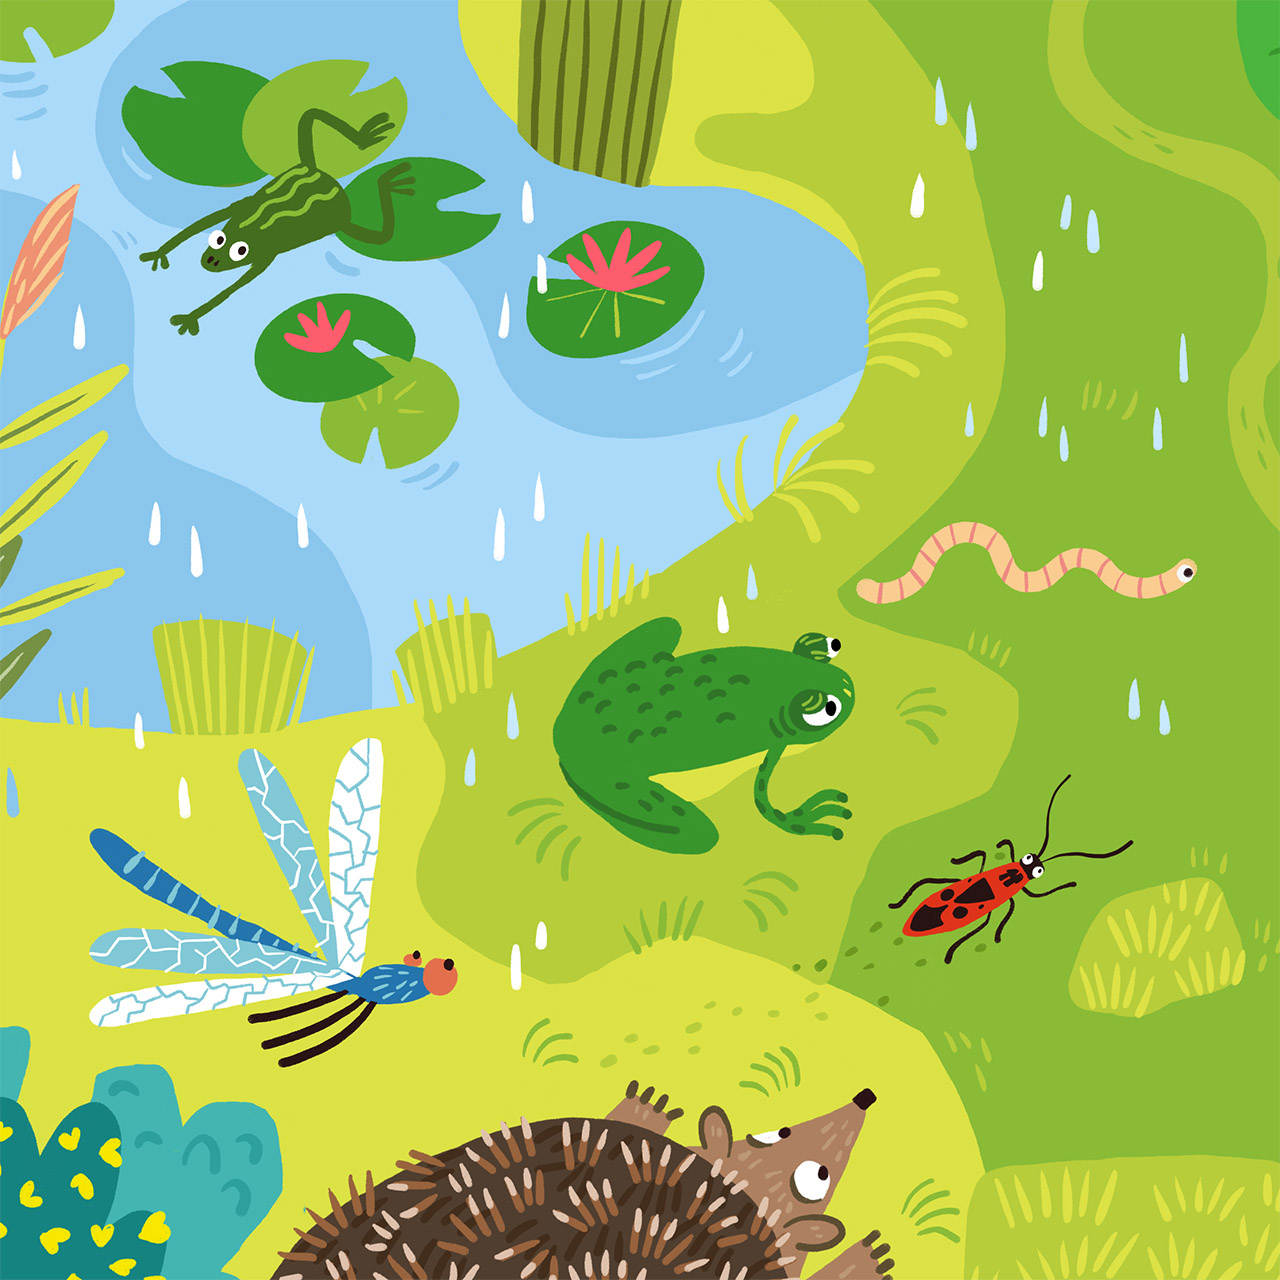 illustration en aplat numérique représentant une mare avec des nénuphars et des grenouilles, un ver de terre, un gendarme, un hérisson et une libellule. Il pleut.